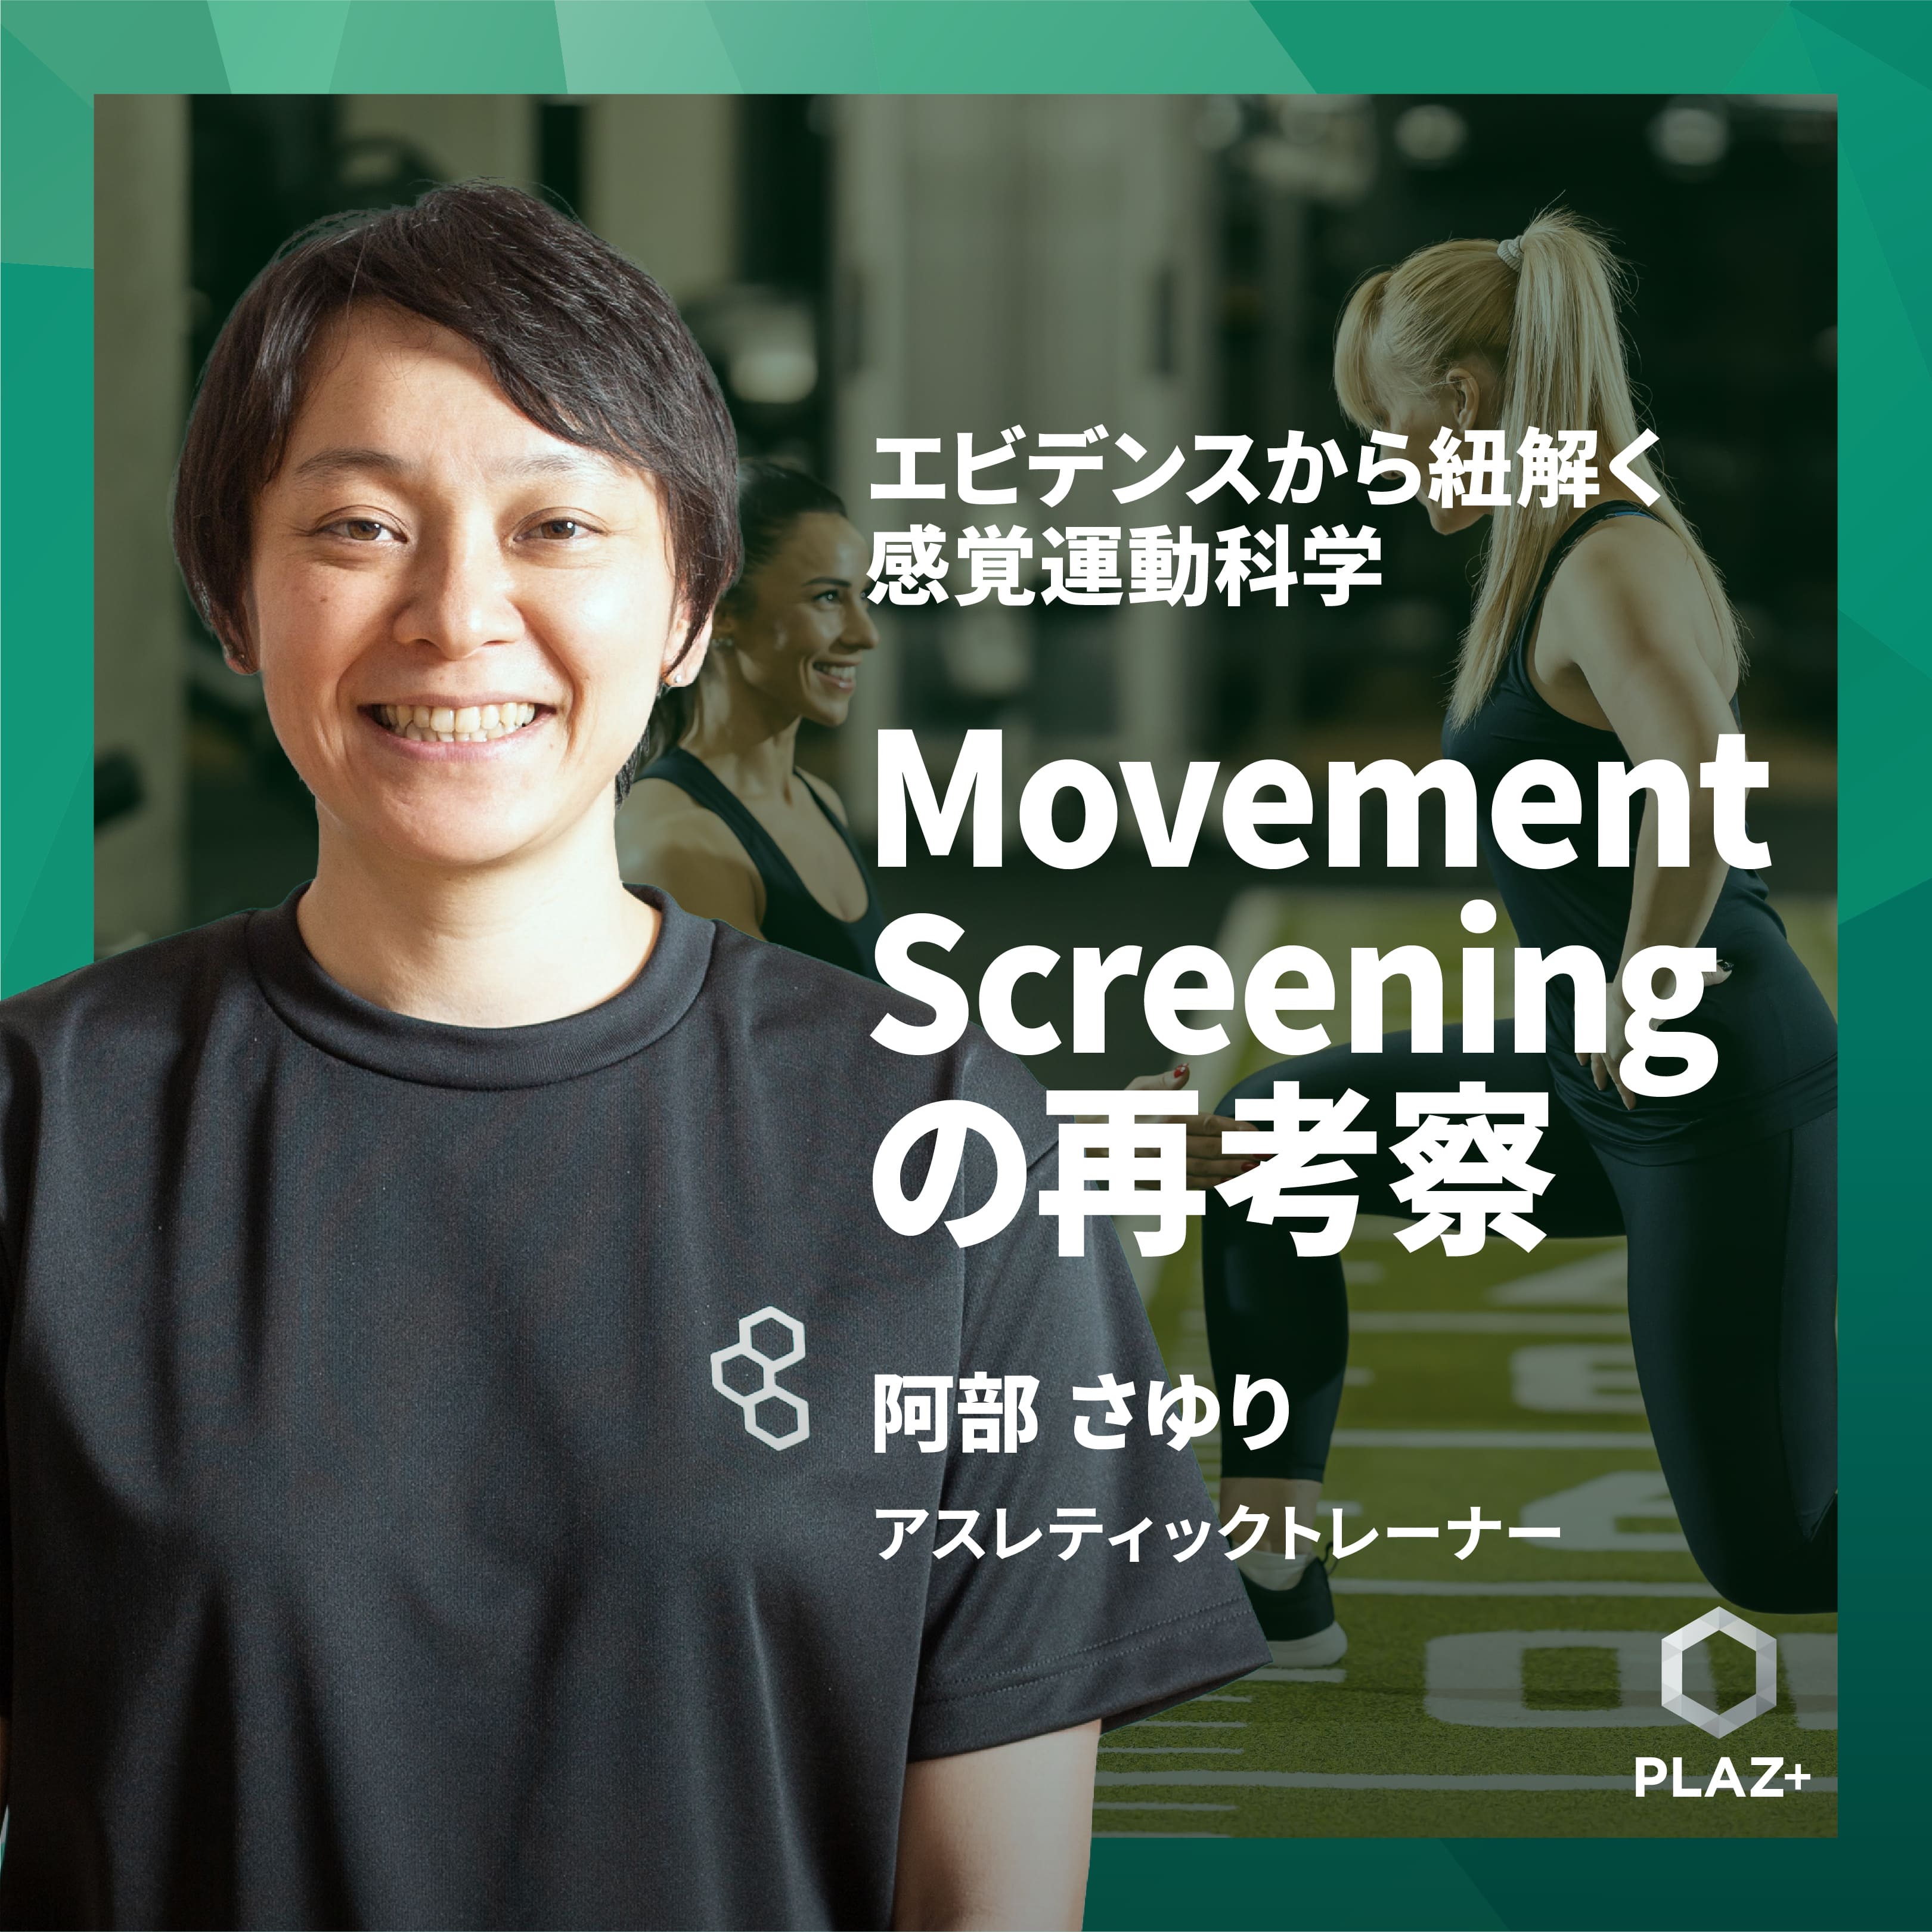 Movement Screening の再考察